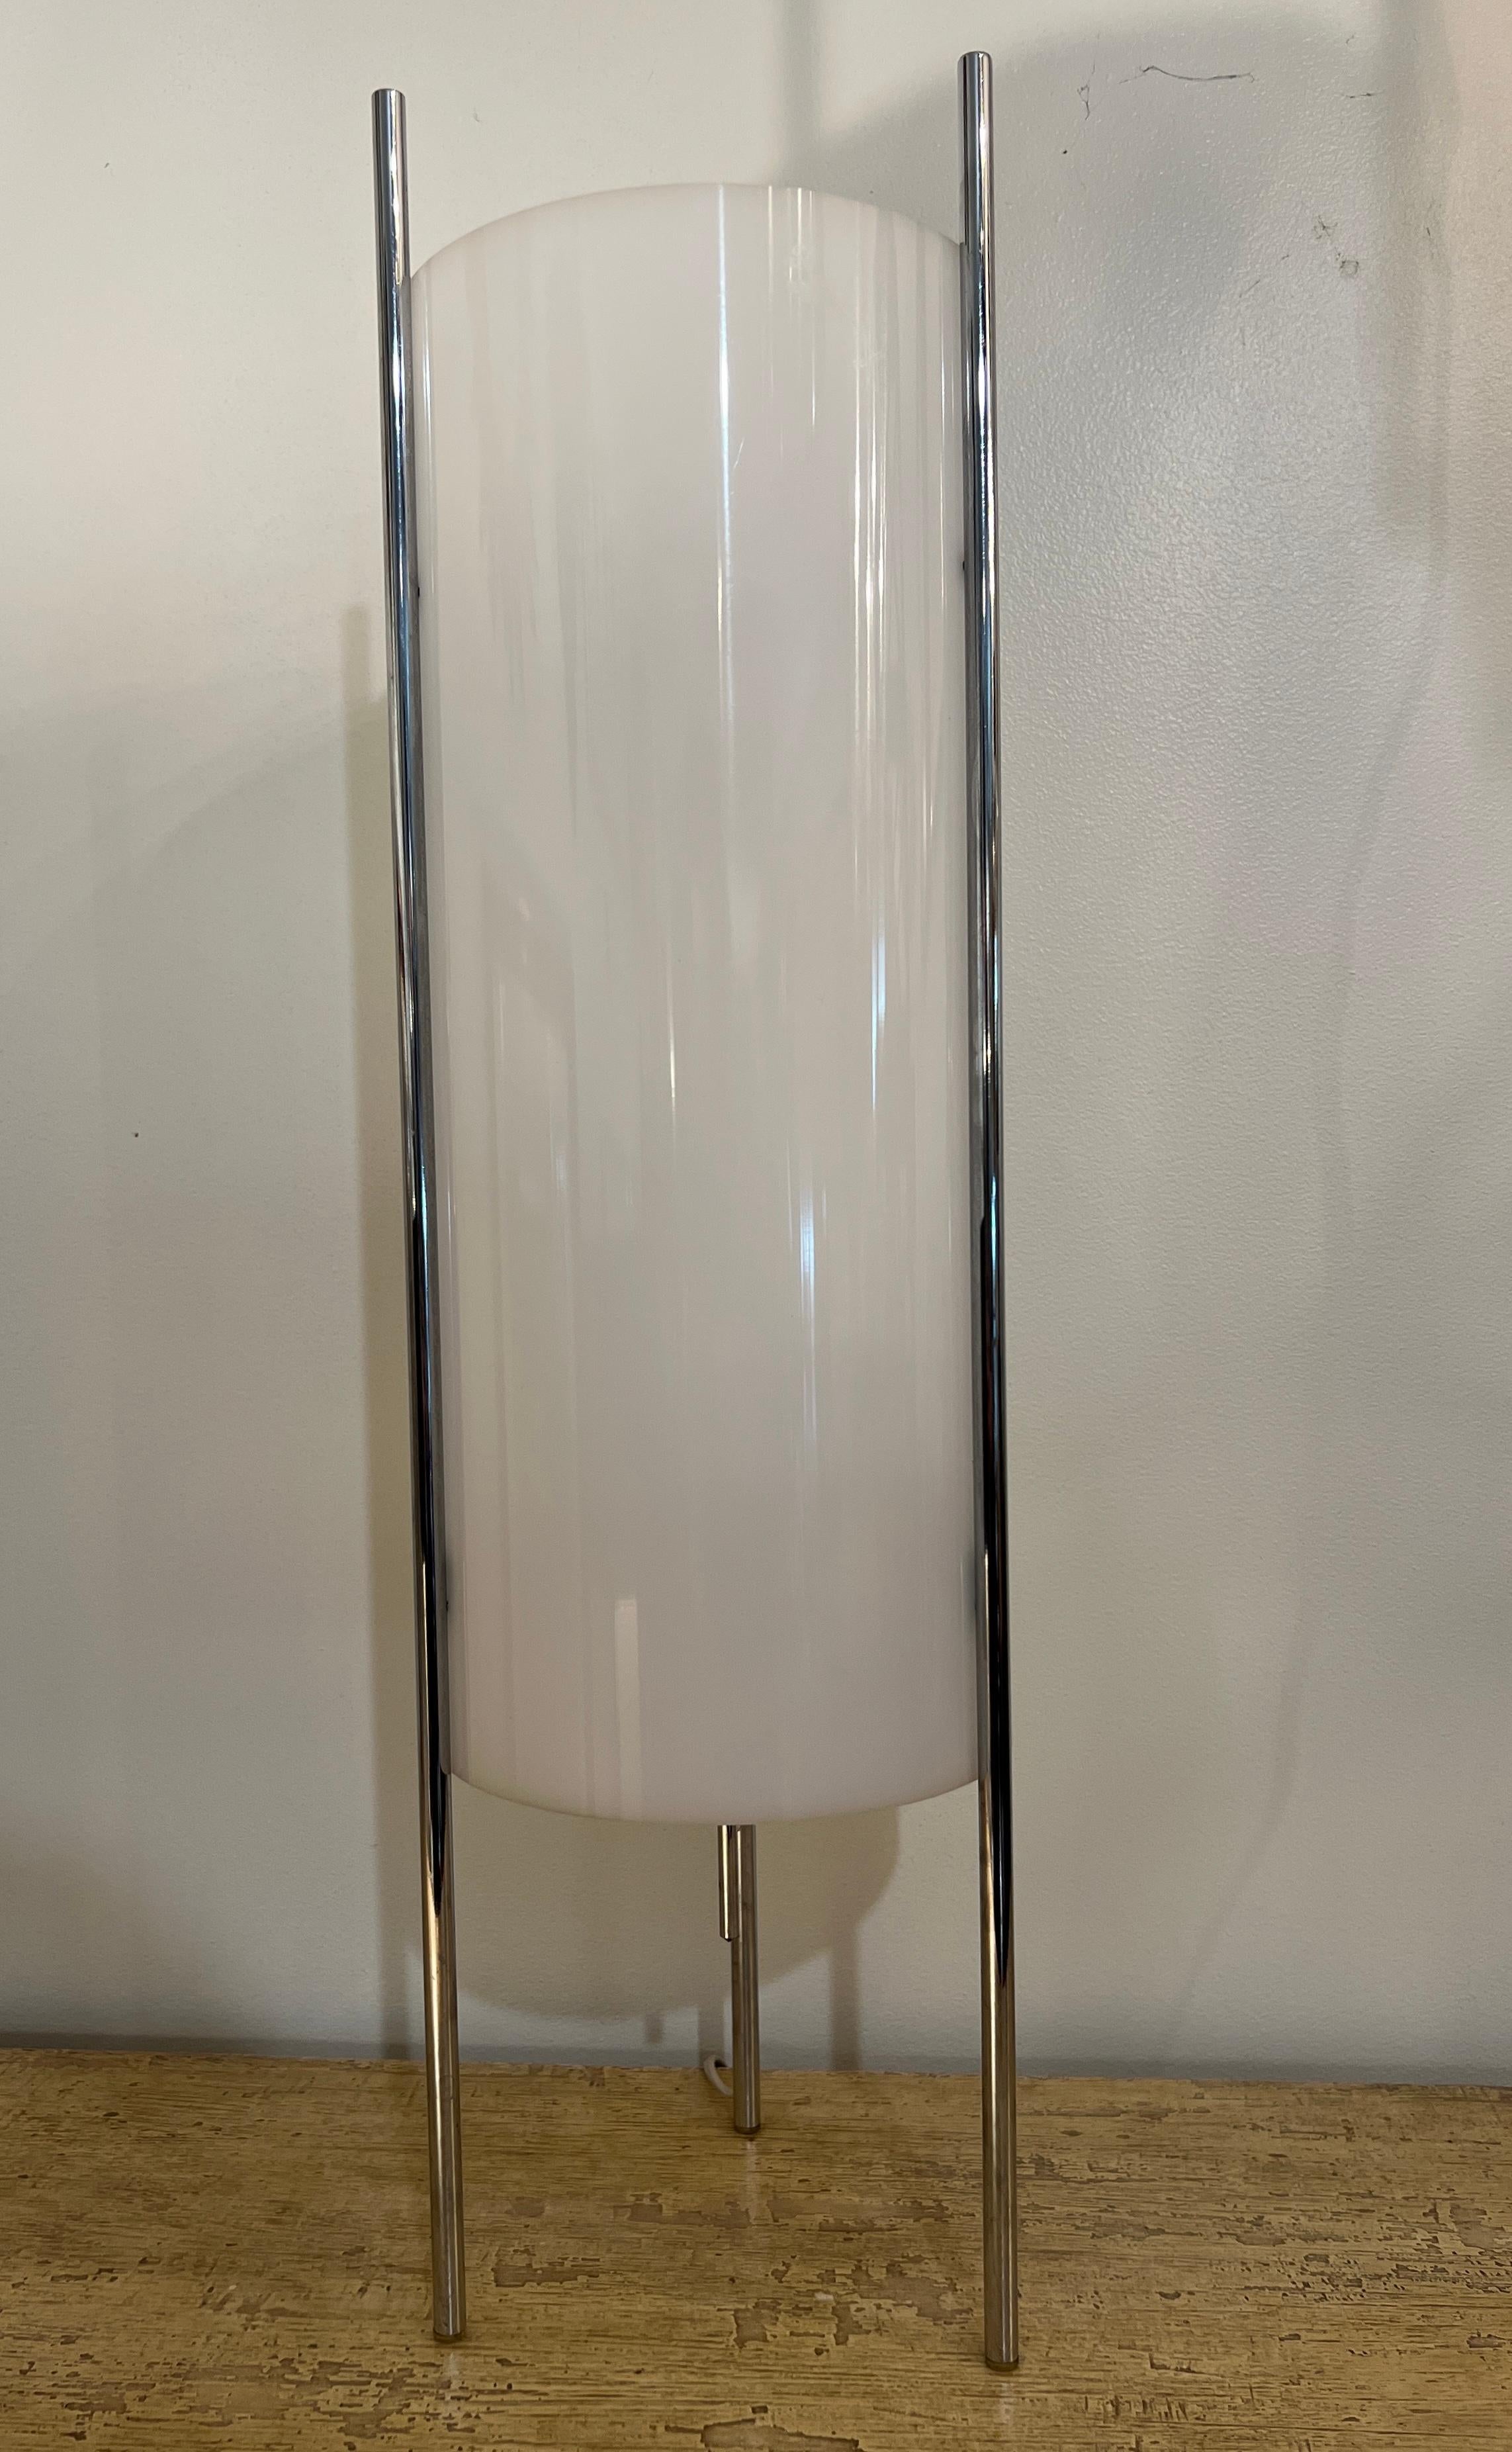 Lampe de table à cylindre chromé et acrylique de style régence hollywoodienne, inspirée du design des années 1970 de Paul Mayen. Whiting est doté d'un abat-jour cylindrique en acrylique blanc dépoli, soutenu par trois supports en métal chromé. 